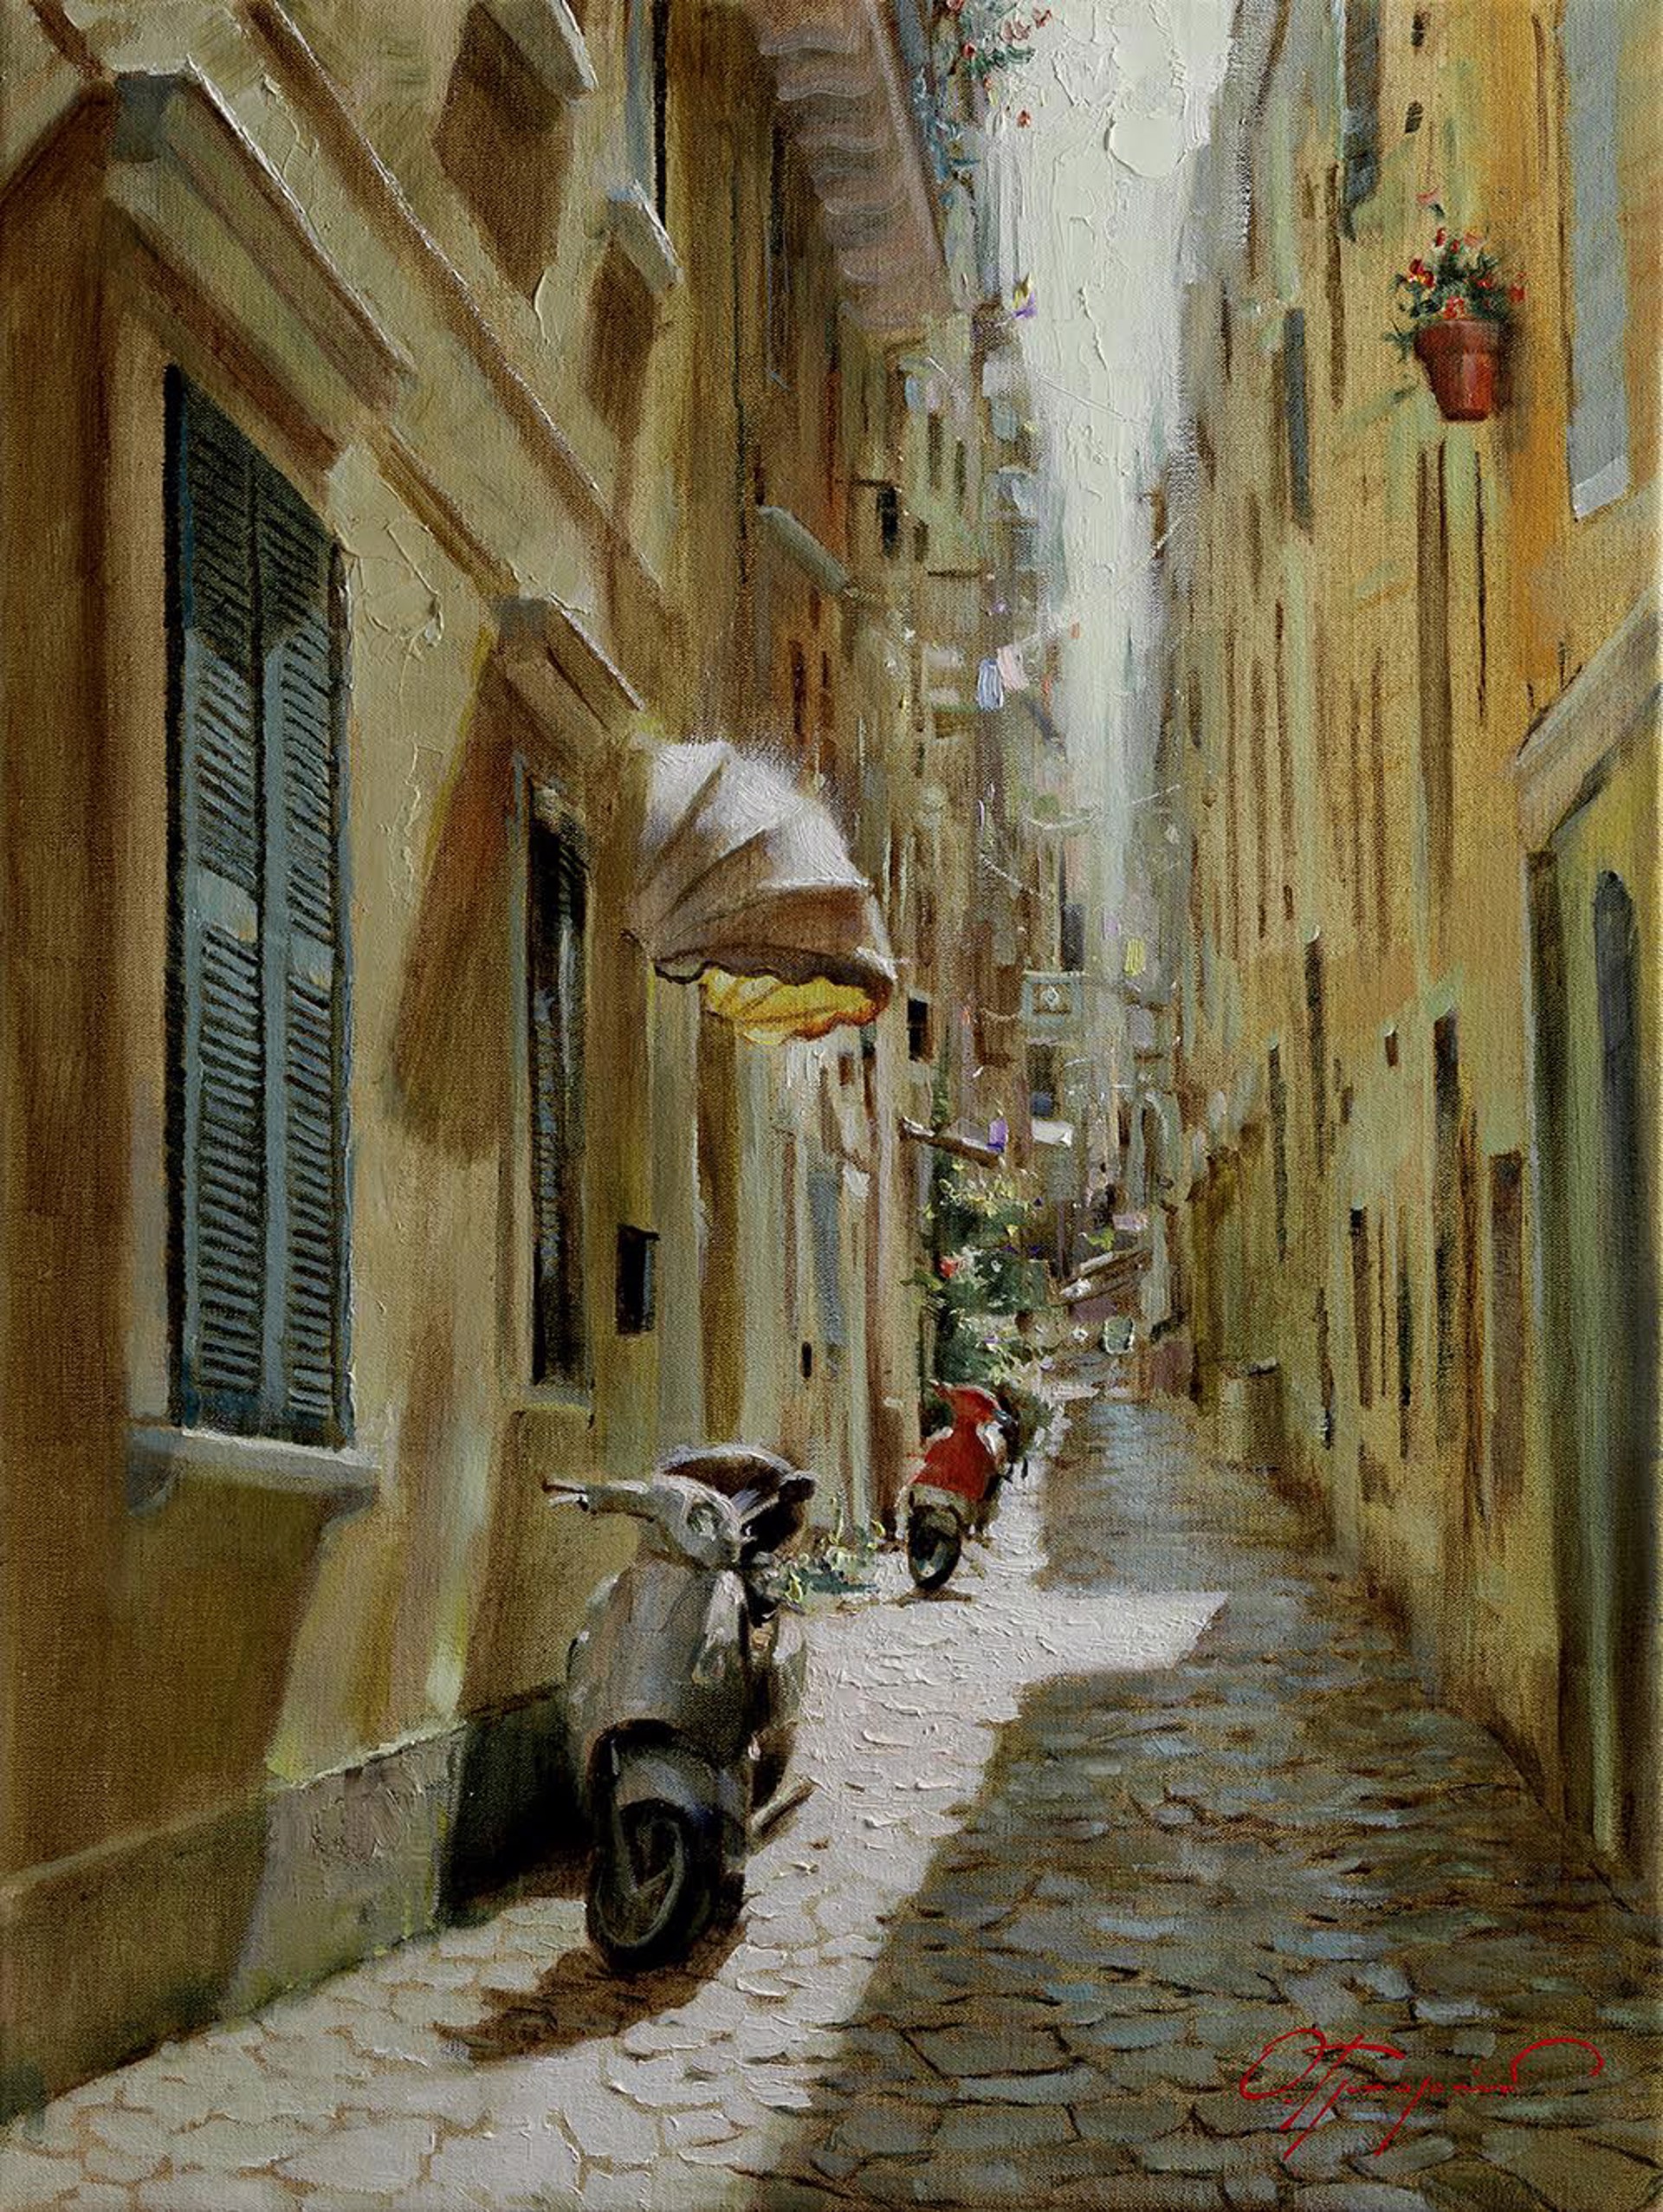 Sunny Lane, Italy by Oleg Trofimov